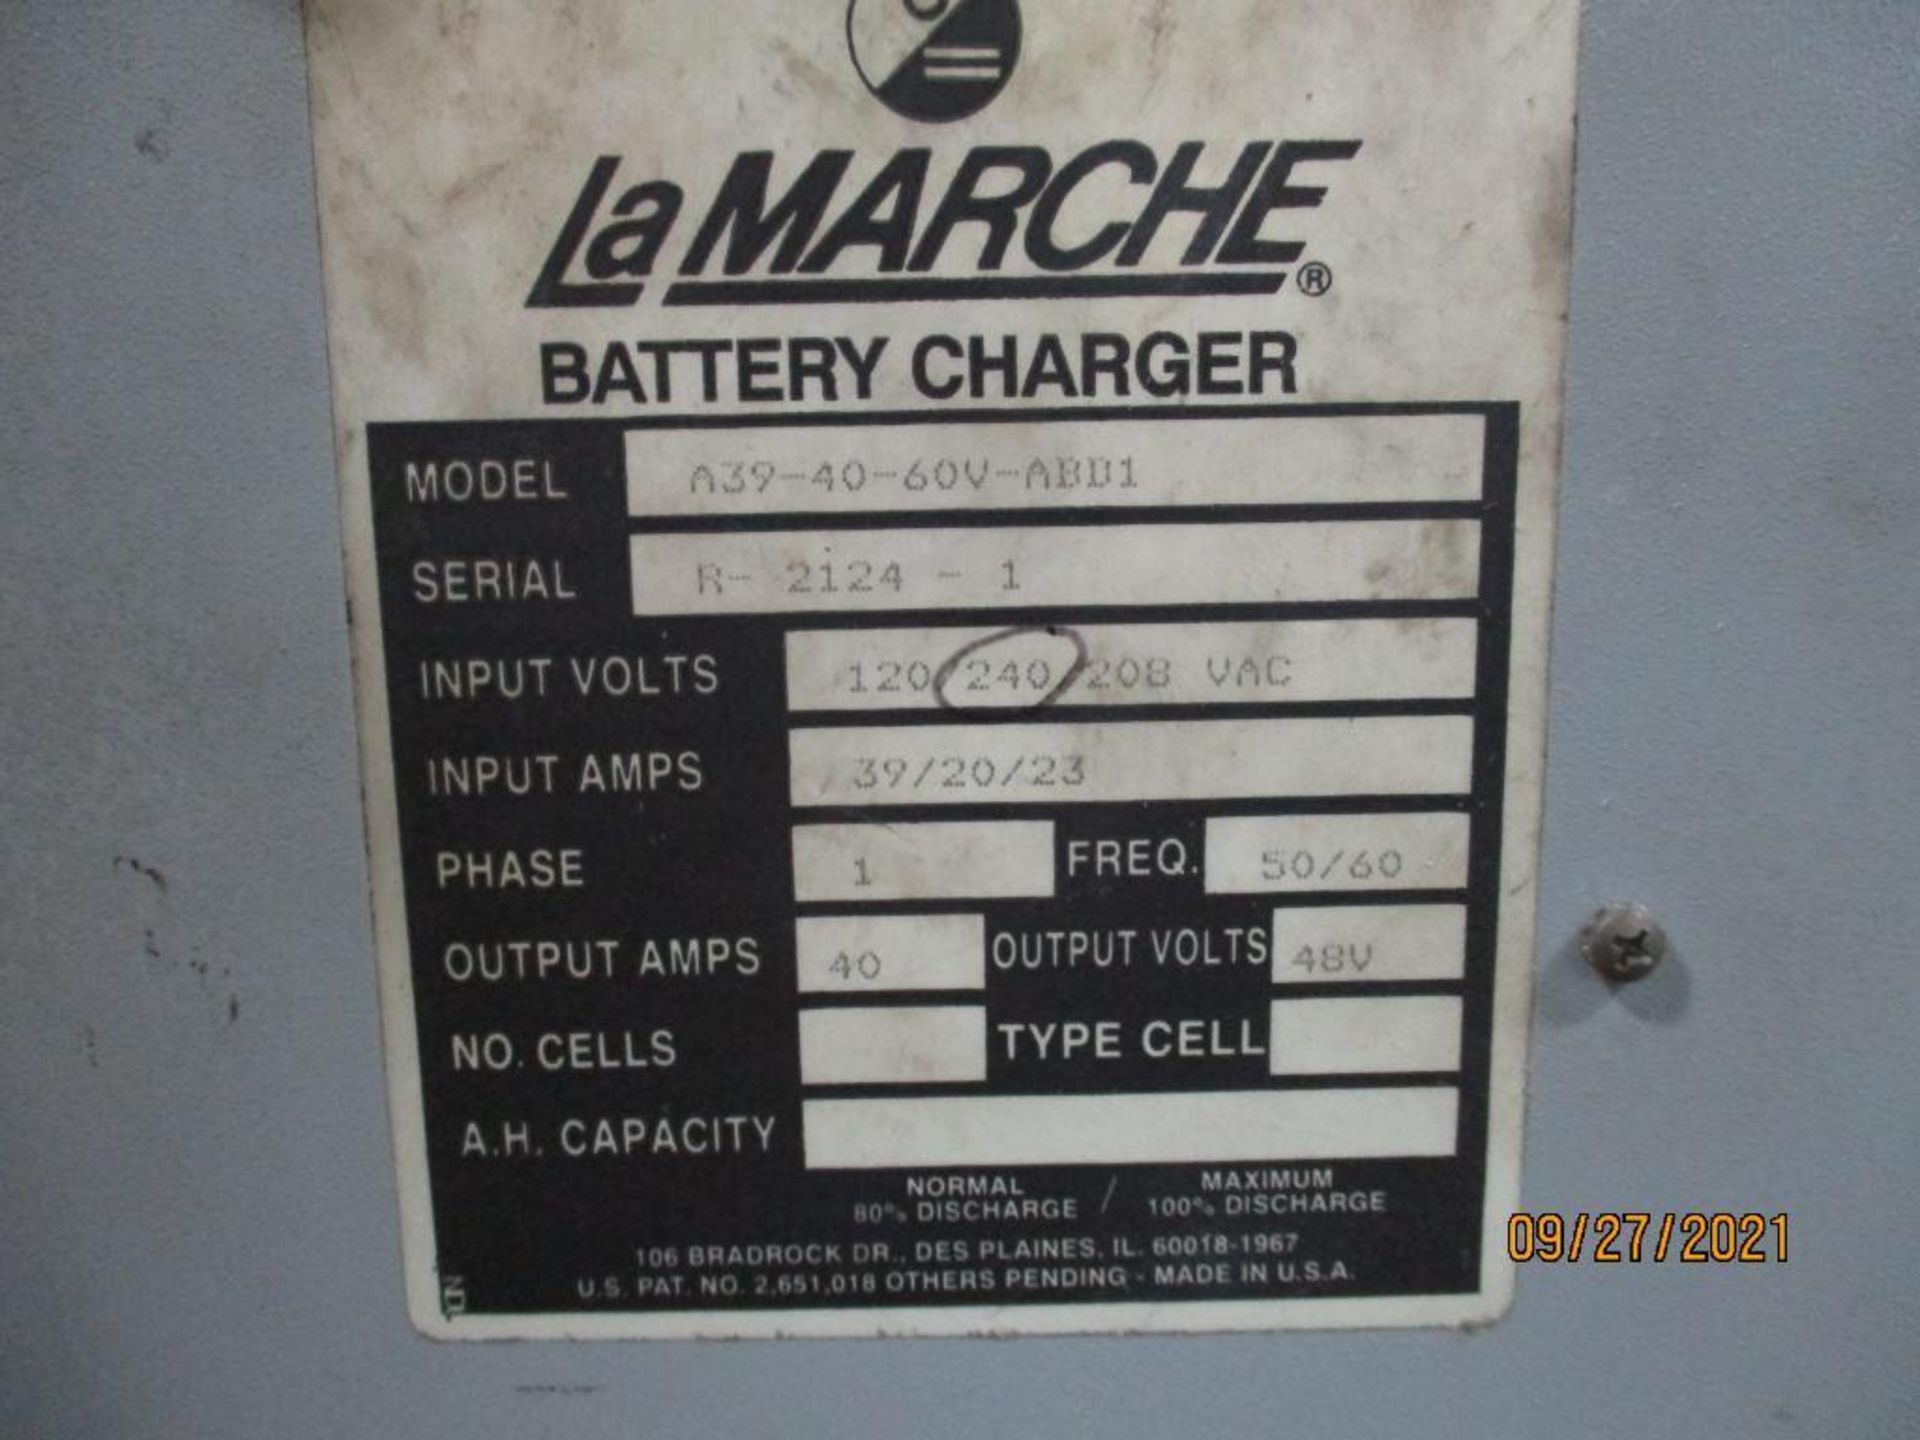 LaMarche 48-Volt Model A39-40-60V-ABD1 Battery Charger S/N: R-2124-1 - Image 2 of 2